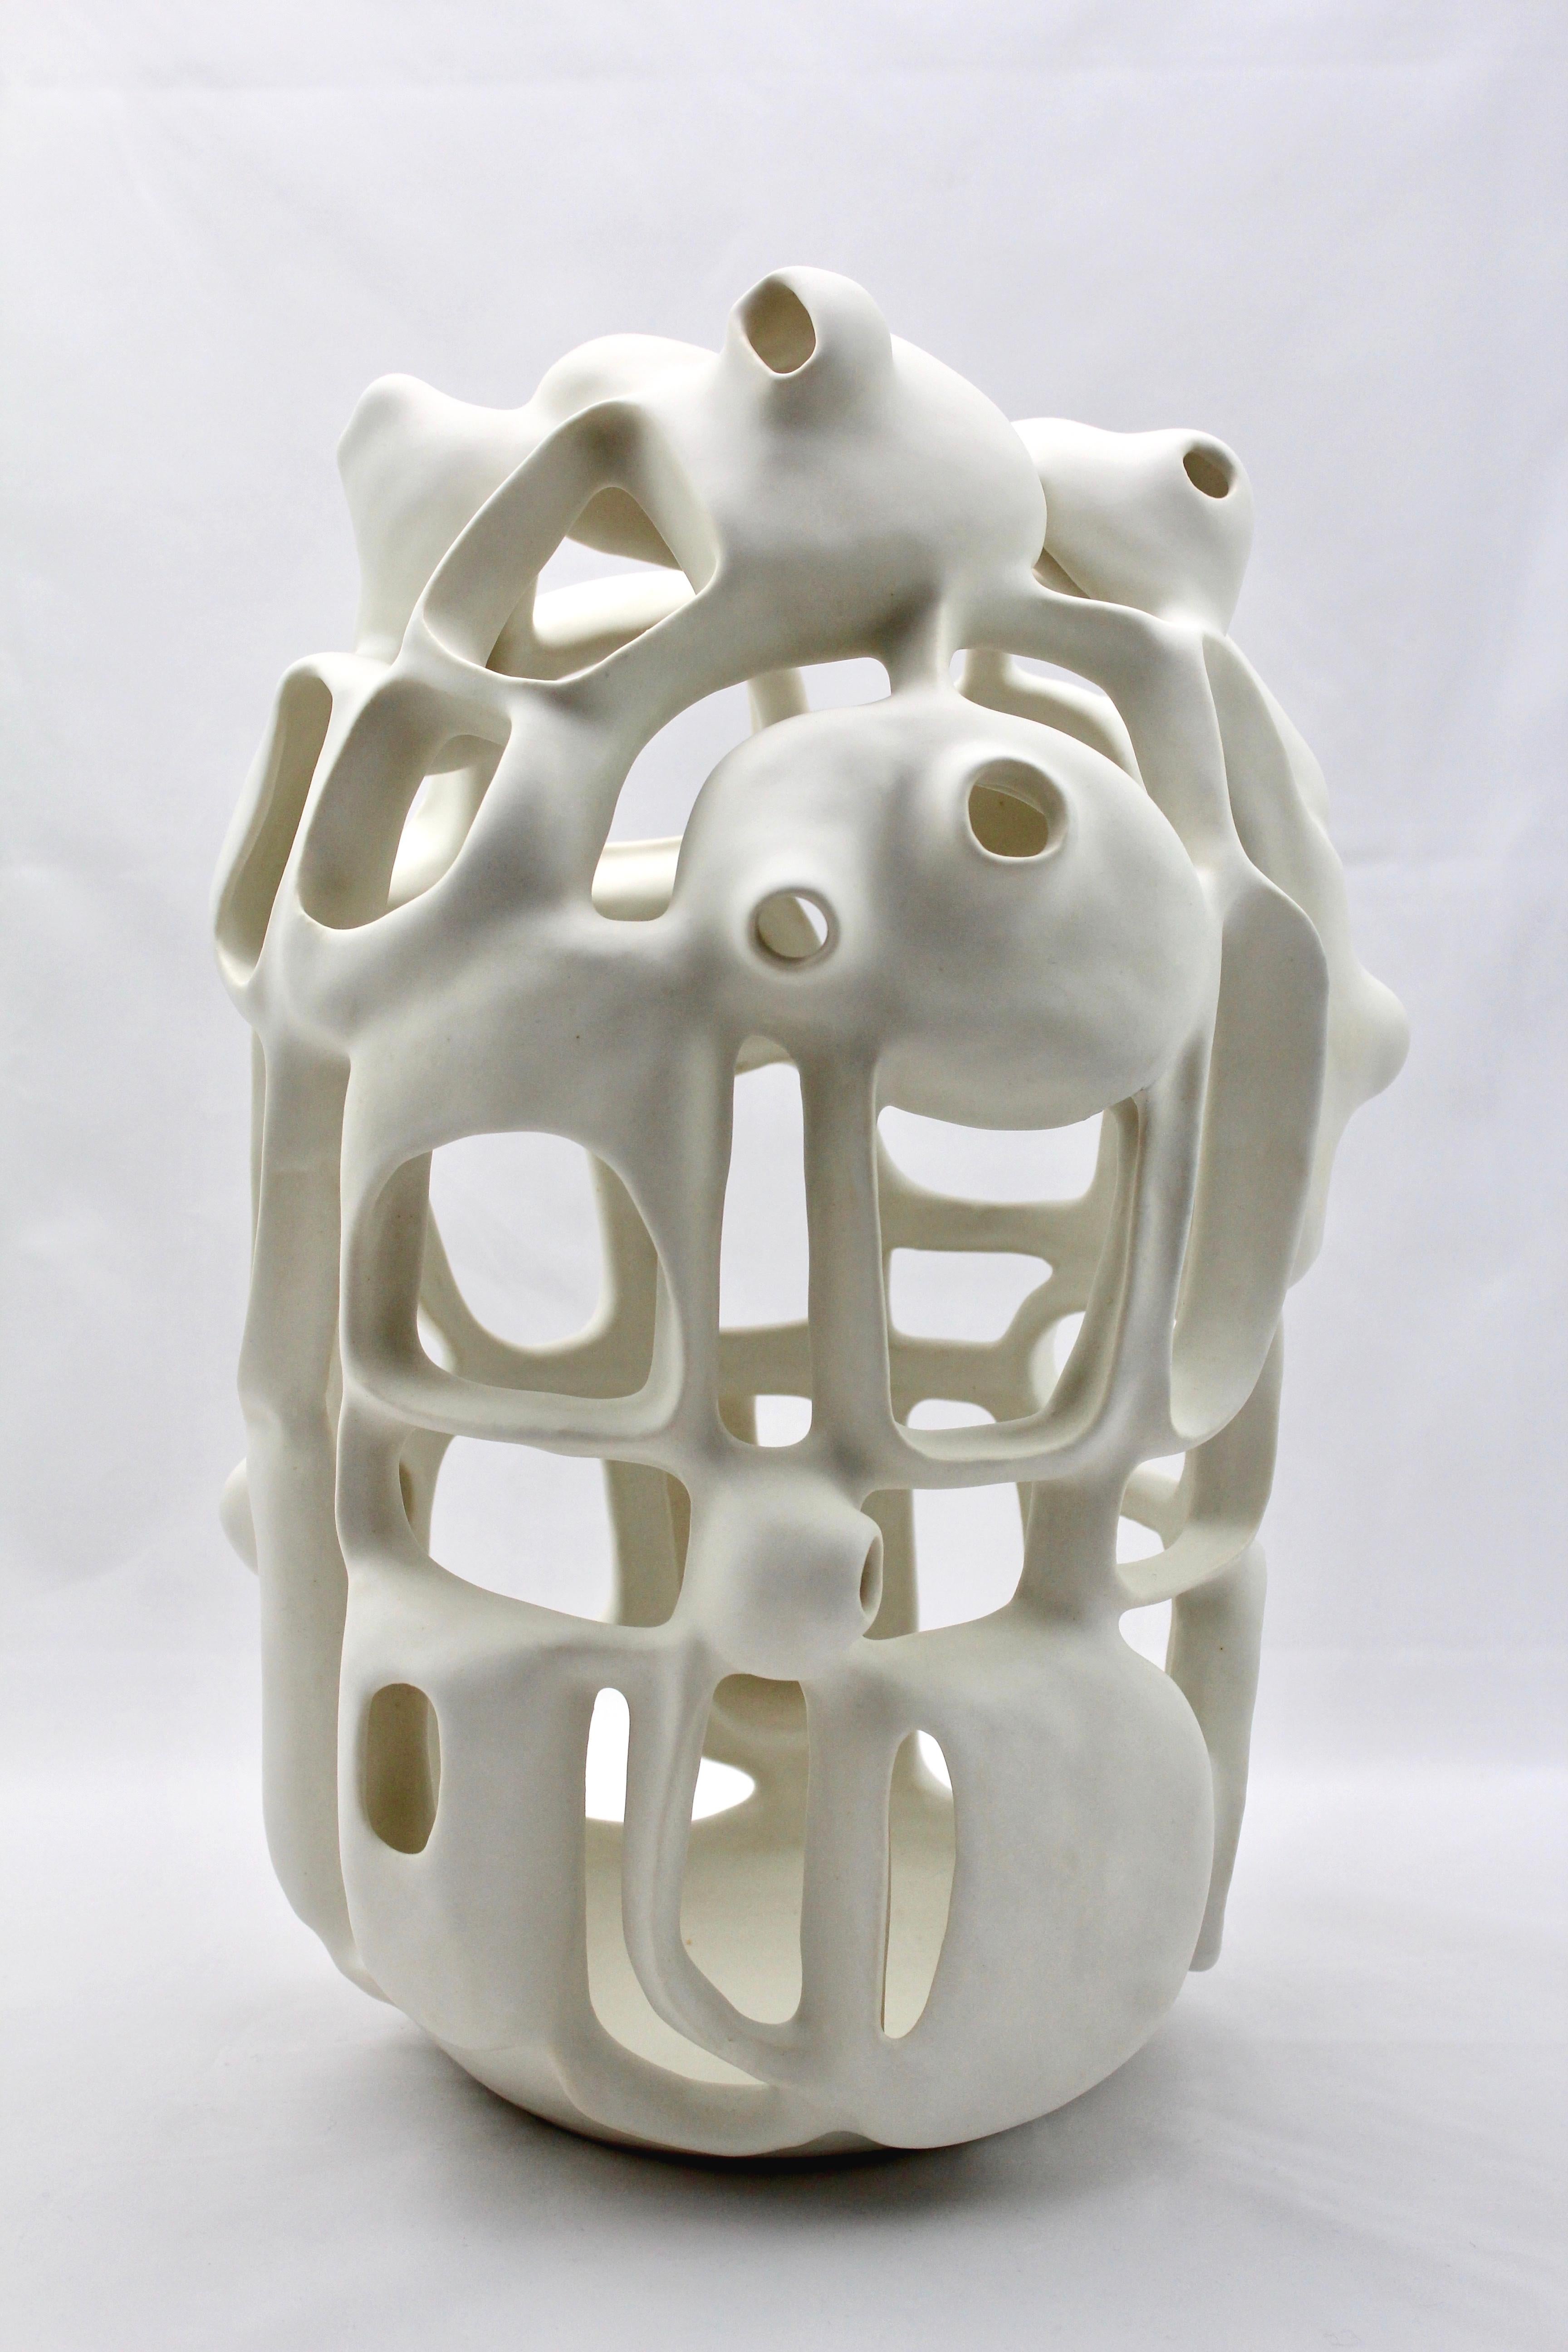 Abstract Sculpture Joan Lurie - Sans titre n° 5 - sculpture géométrique abstraite en porcelaine émaillée blanche organique 